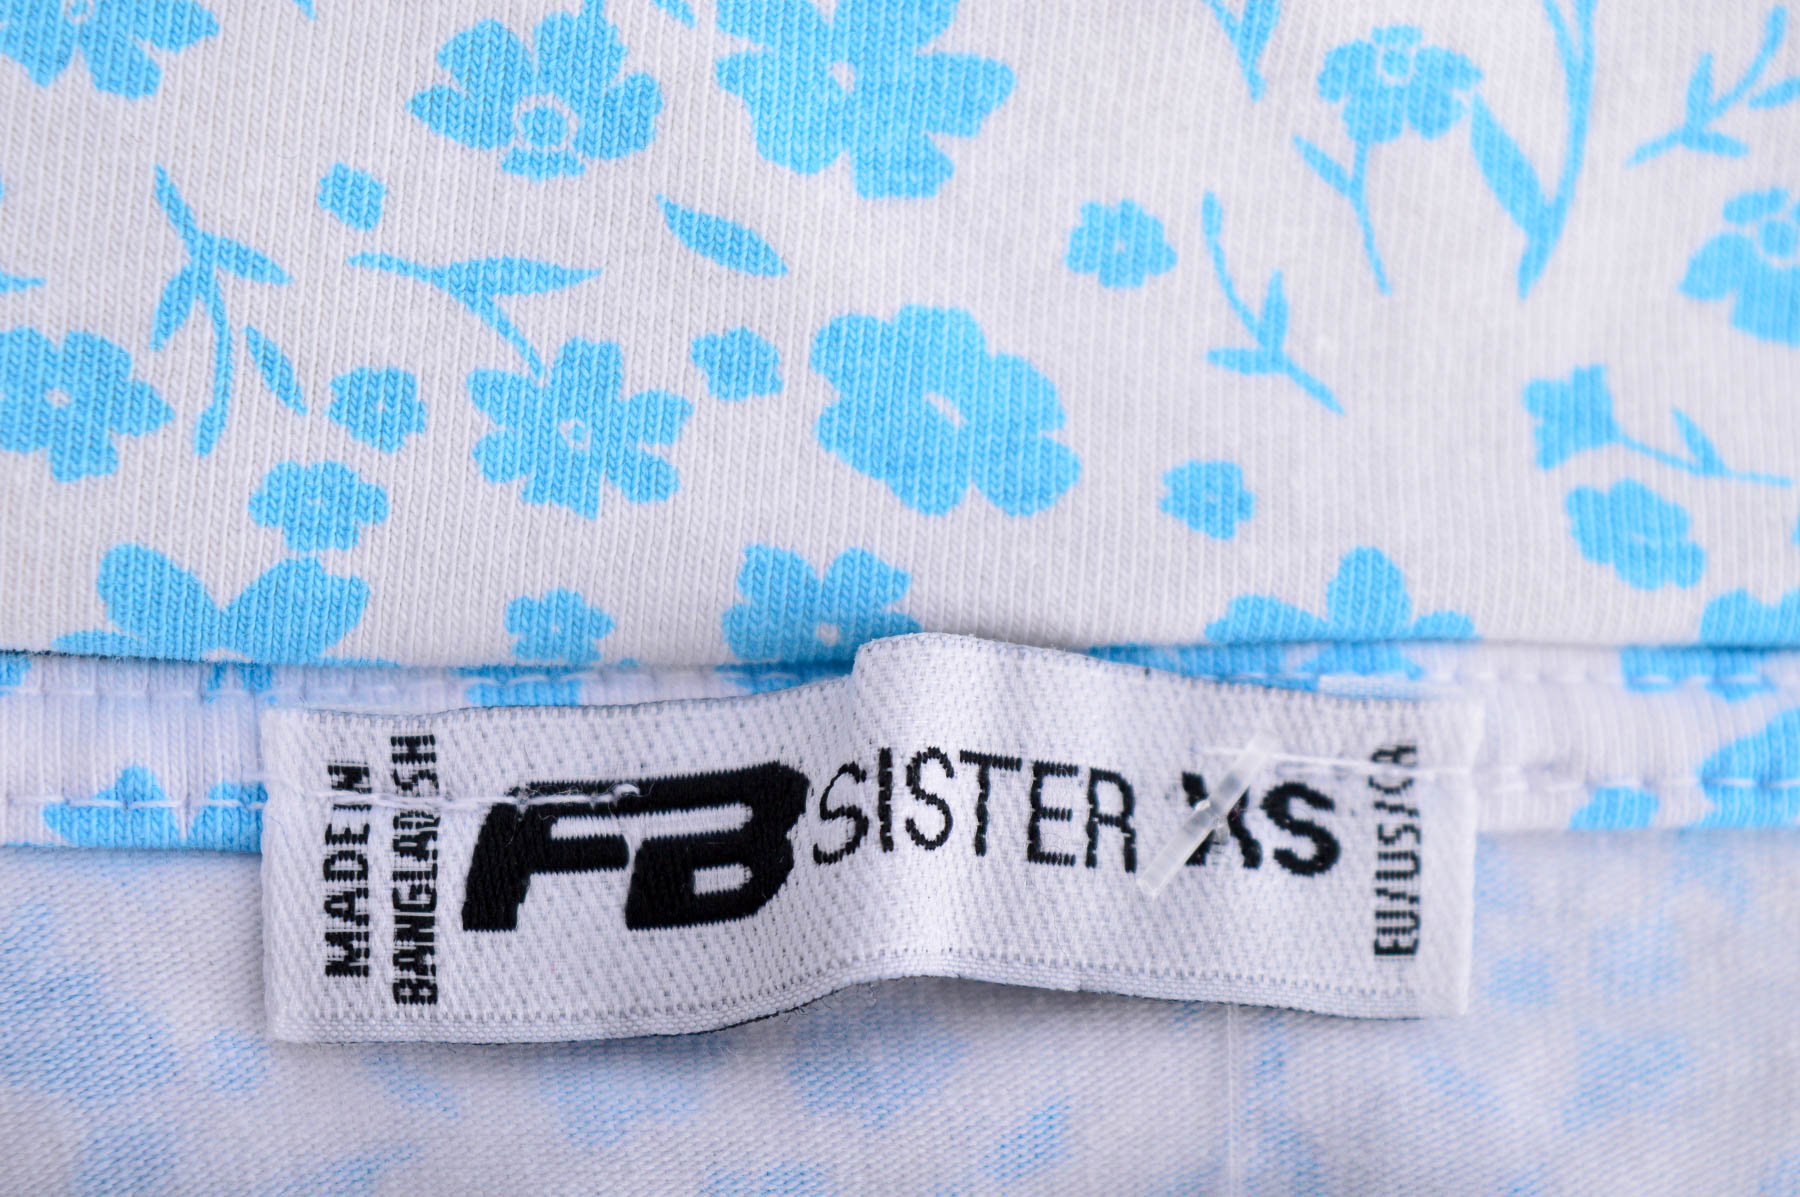 Дамска тениска - FB Sister - 2